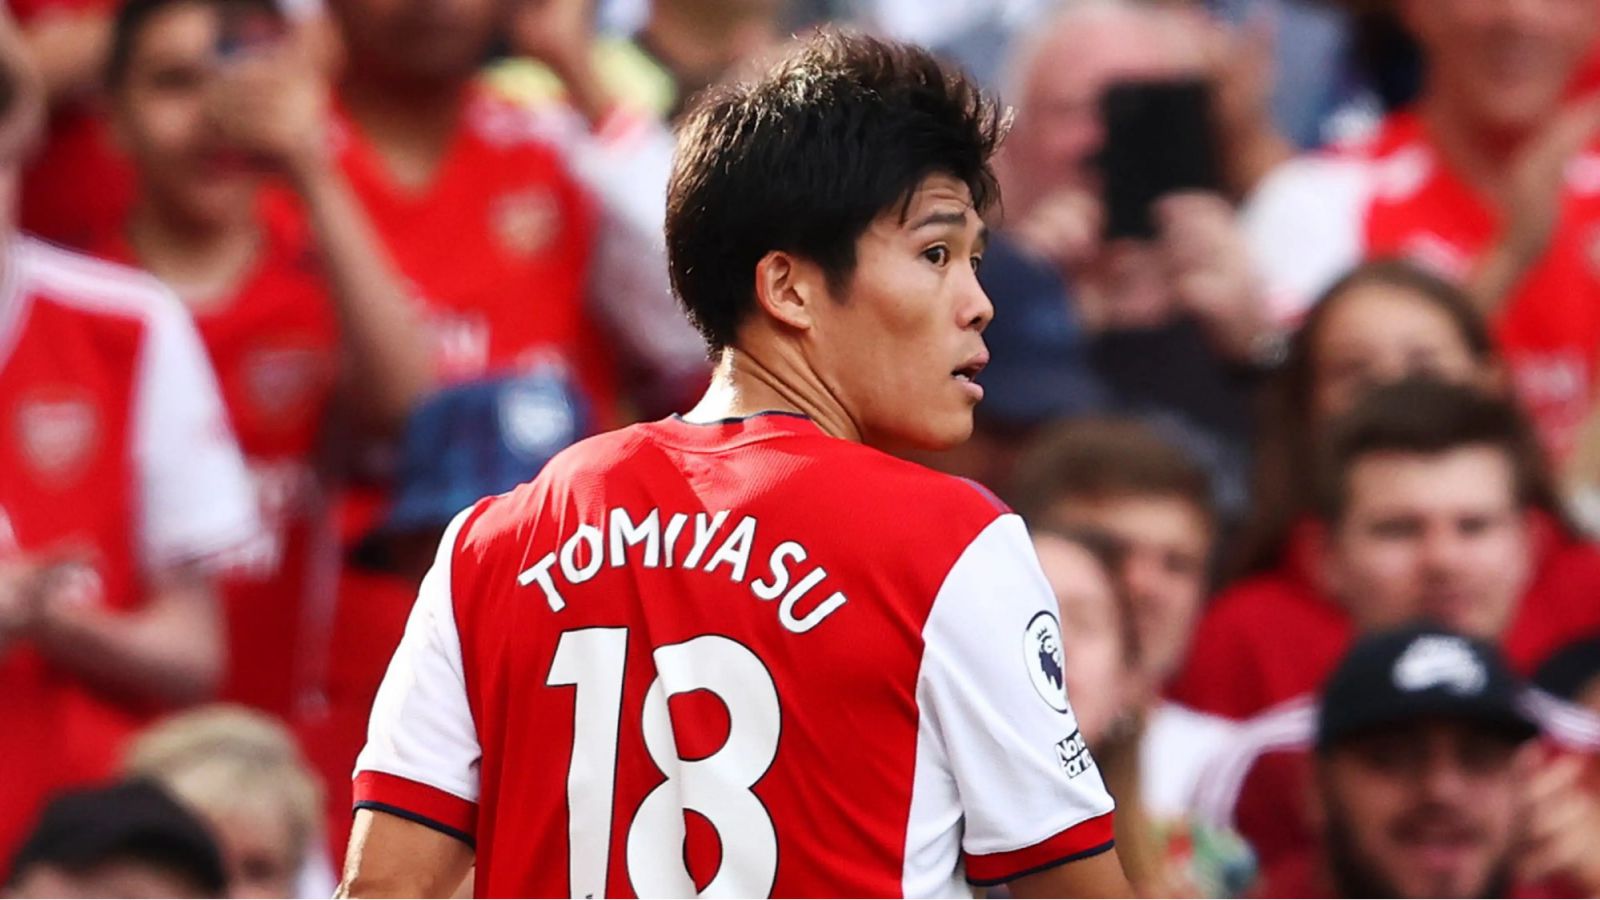 Danh sách cầu thủ Nhật Bản đá cho Arsenal - Tomiyasu để lại ấn tượng mạnh